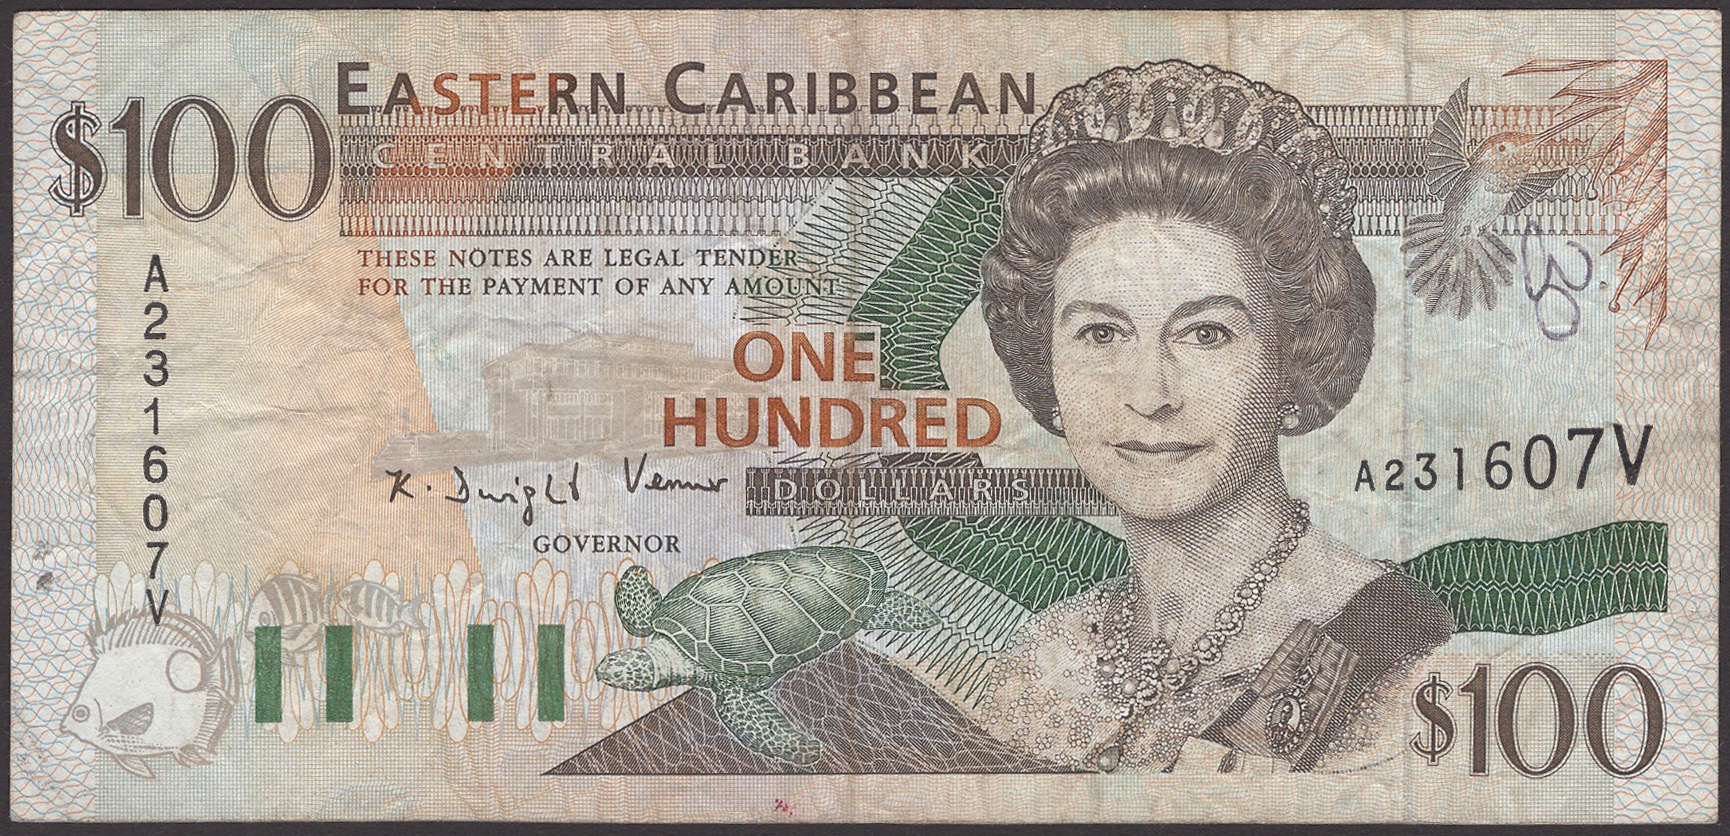 Eastern Caribbean Central Bank, $100, ND (1994), serial number A231607 V (St Vincent),...